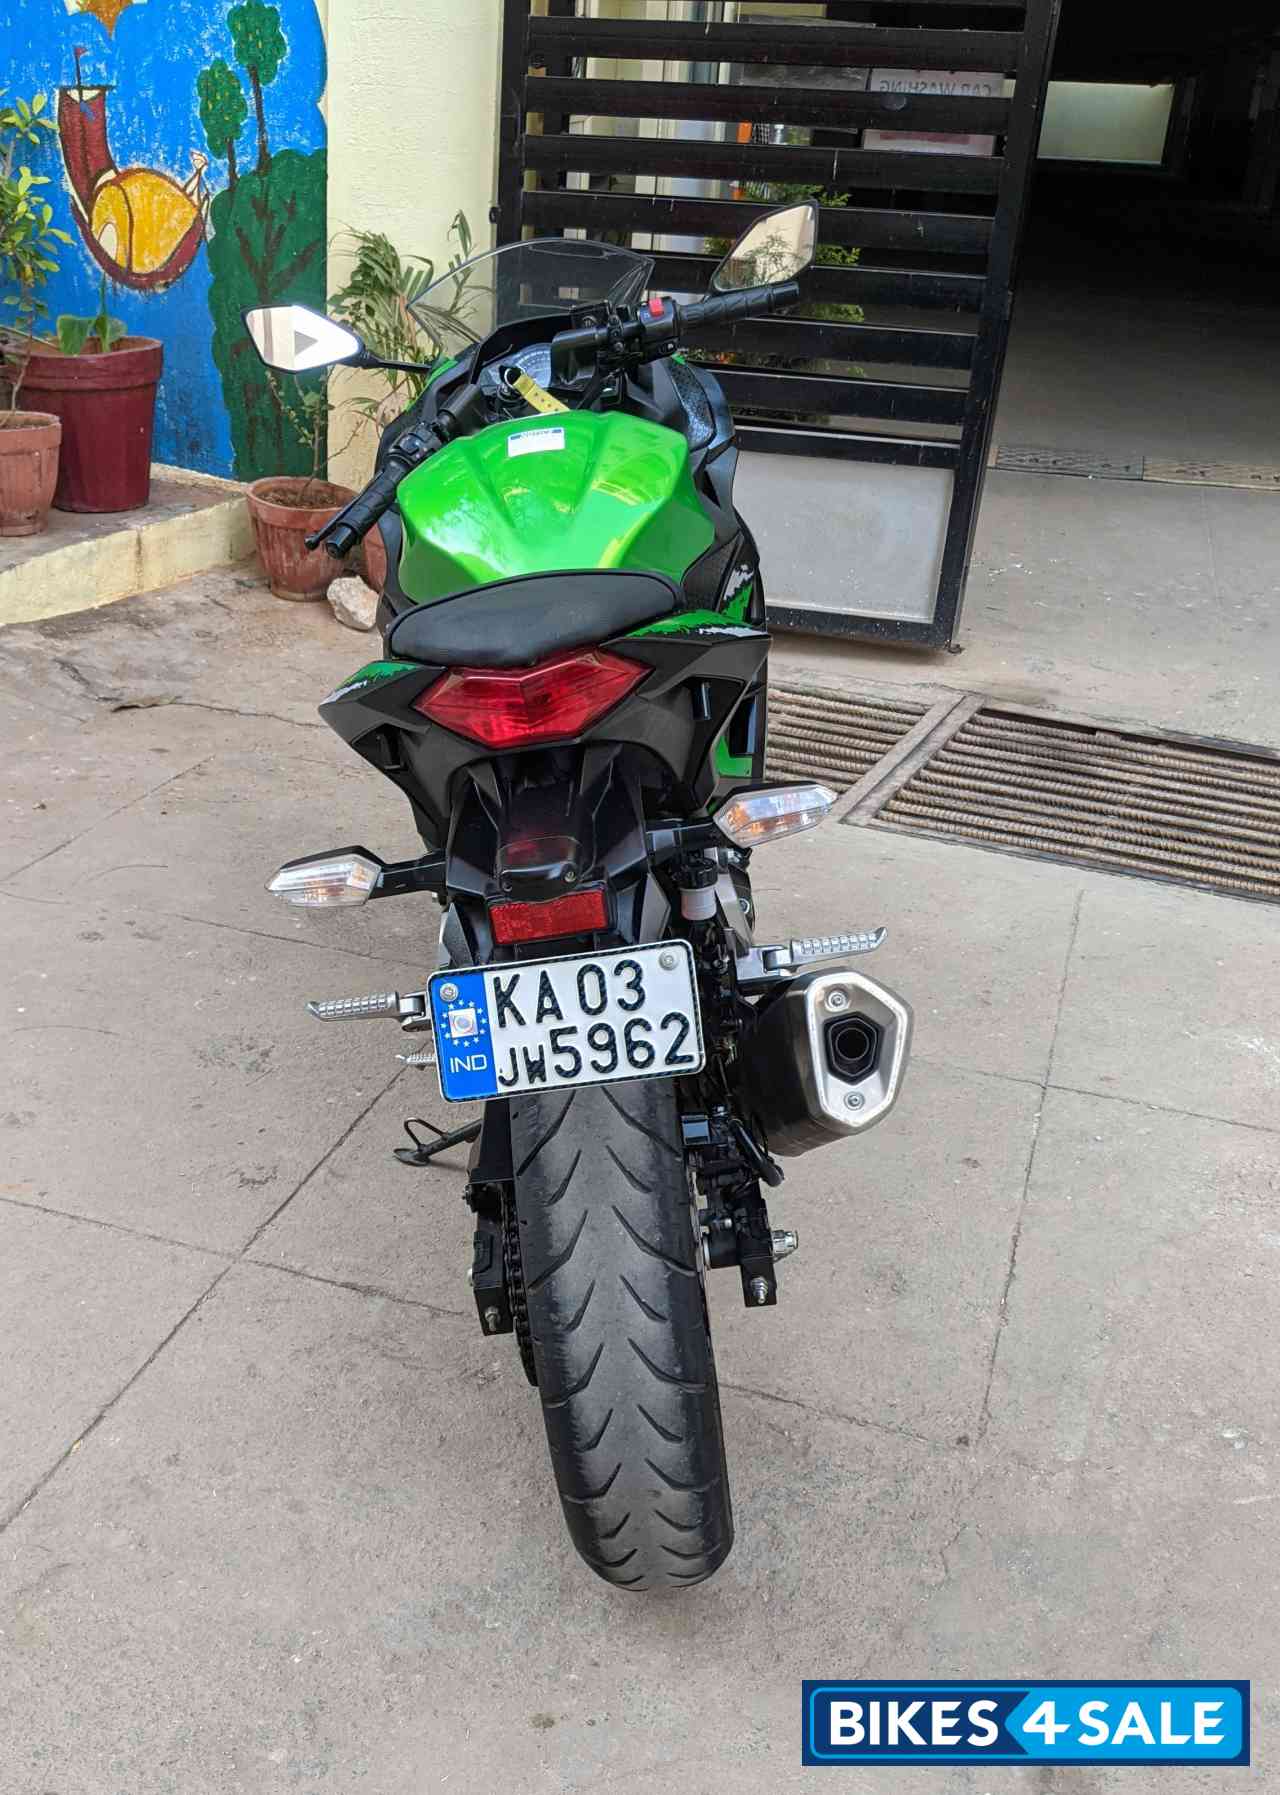 Green Kawasaki Ninja 300R